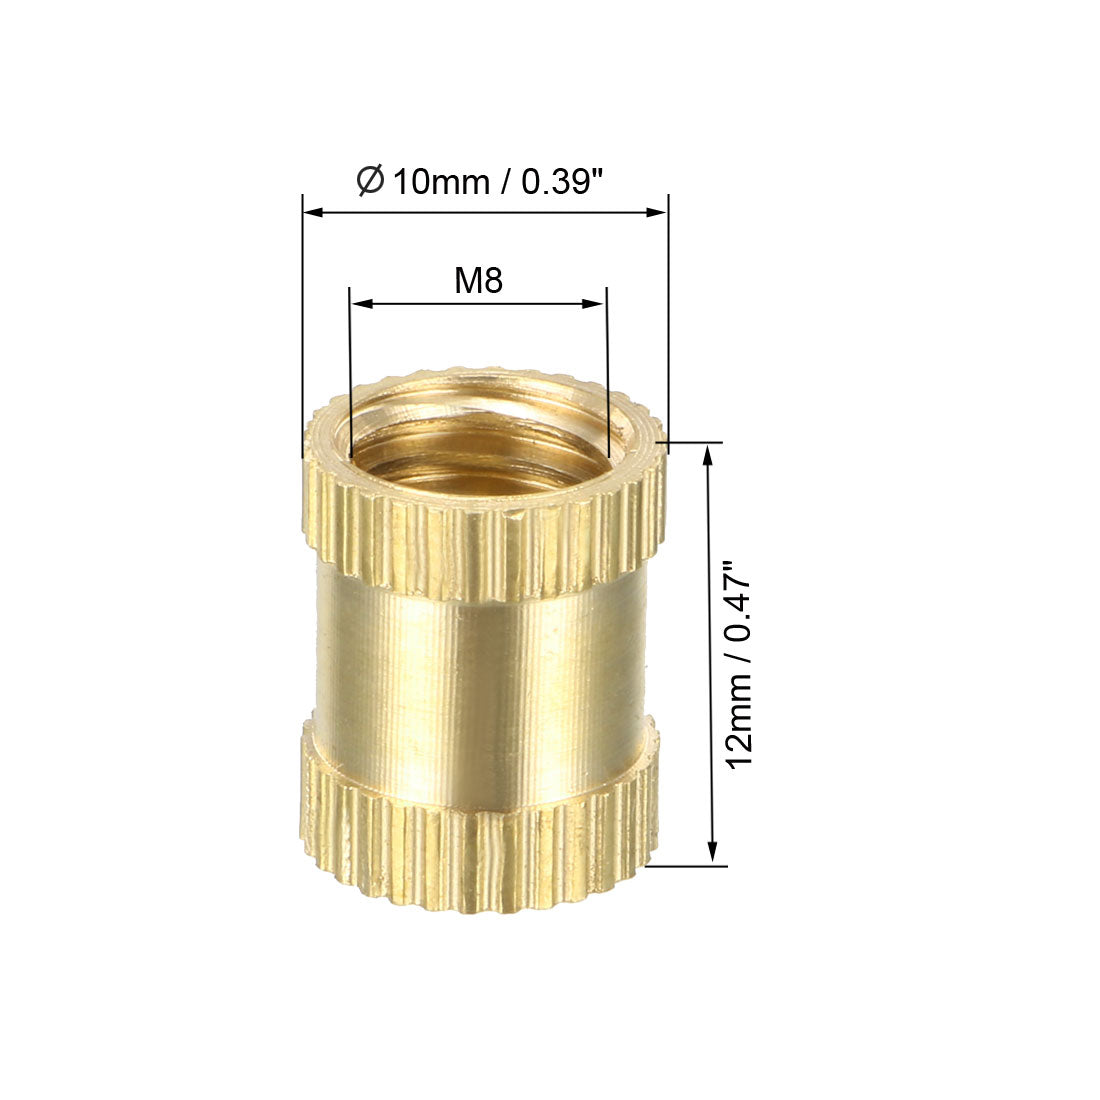 uxcell Uxcell M8 x 12mm(L) x 10mm(OD) Female Thread Brass Knurled Threaded Insert Embedment Nuts, 50 Pcs